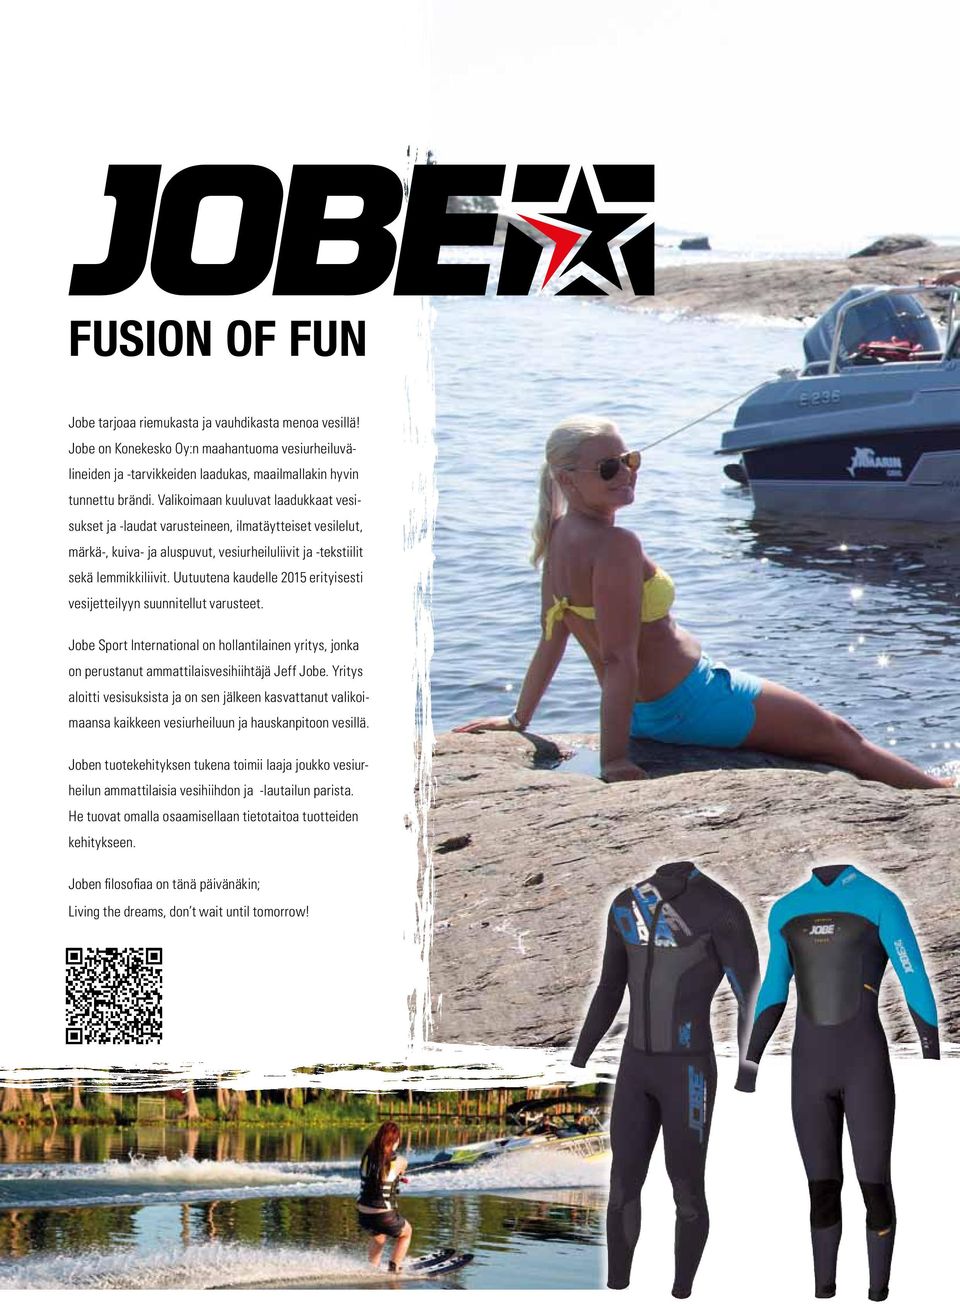 Uutuutena kaudelle 2015 erityisesti vesijetteilyyn suunnitellut varusteet. Jobe Sport International on hollantilainen yritys, jonka on perustanut ammattilaisvesihiihtäjä Jeff Jobe.